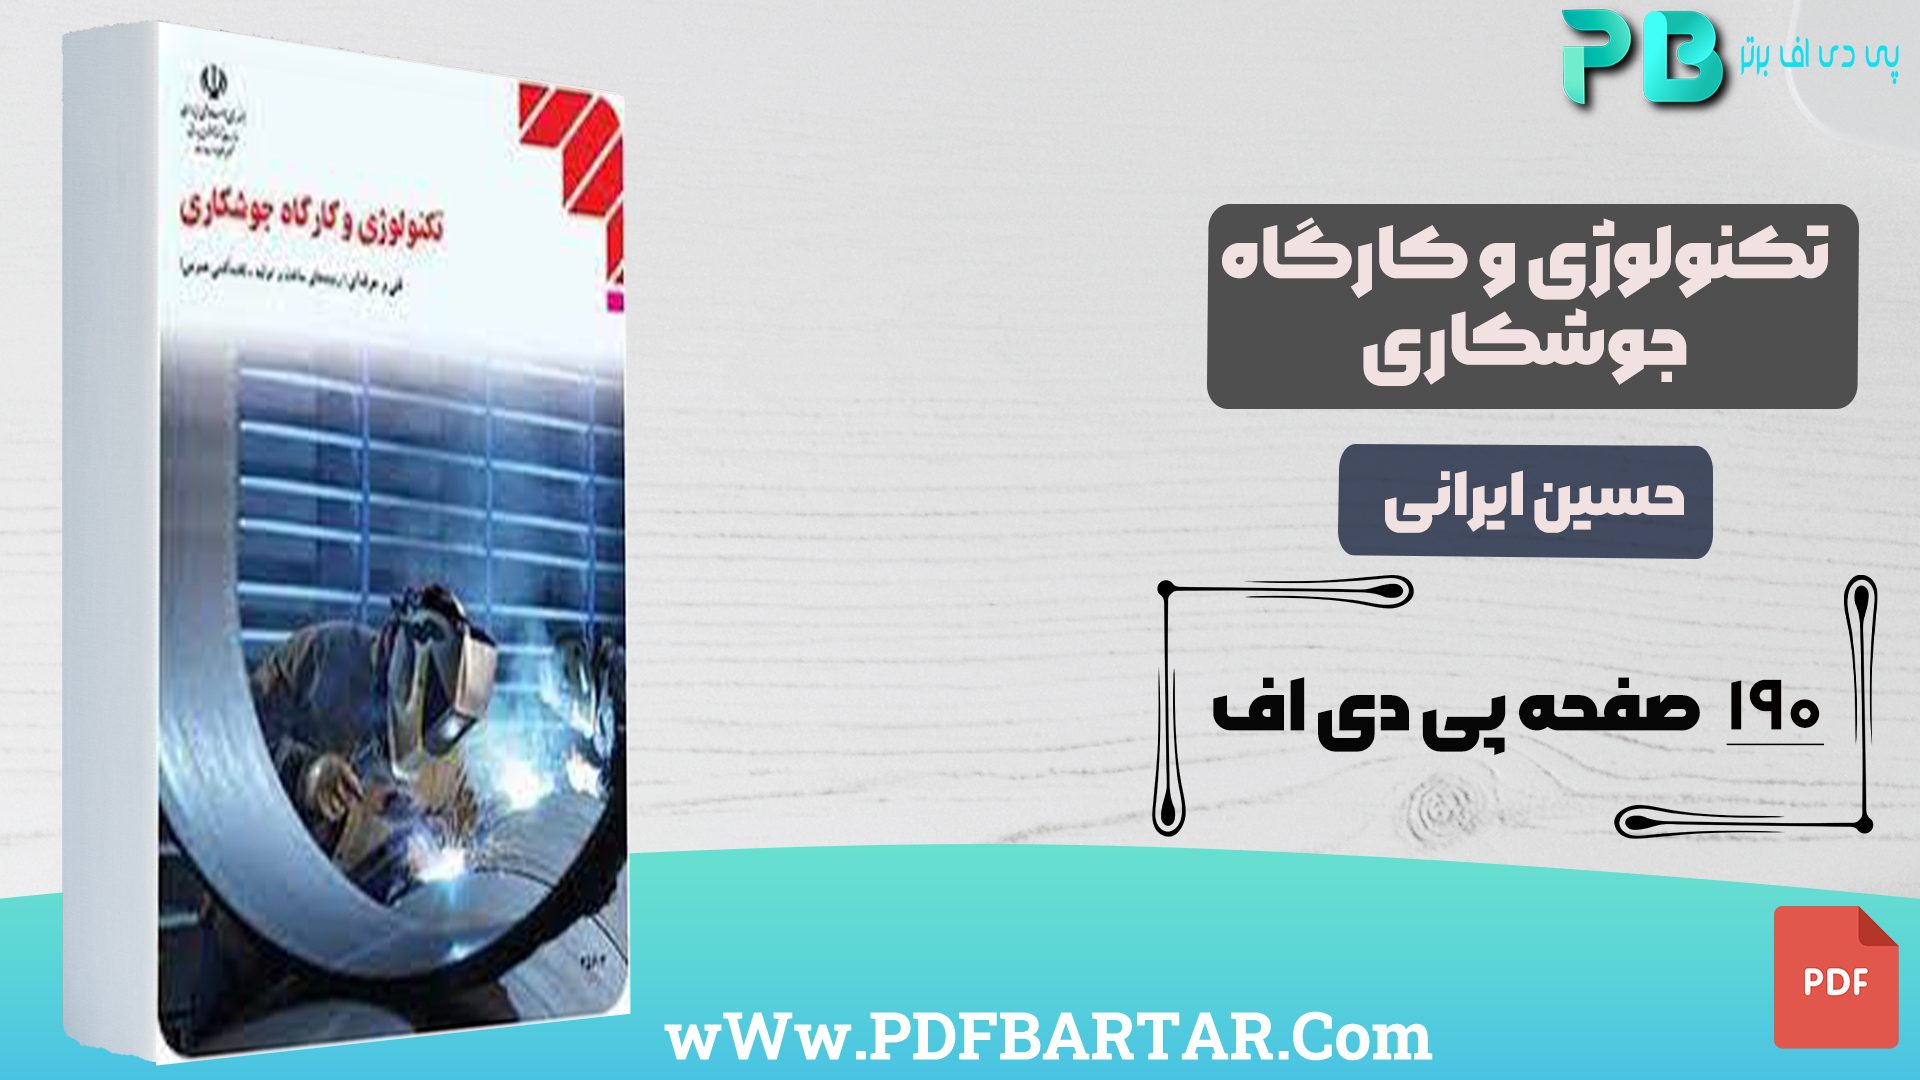 دانلود پی دی اف کتاب تکنولوژی و کارگاه جوشکاری حسین ایرانی PDF - پی دی اف برتر